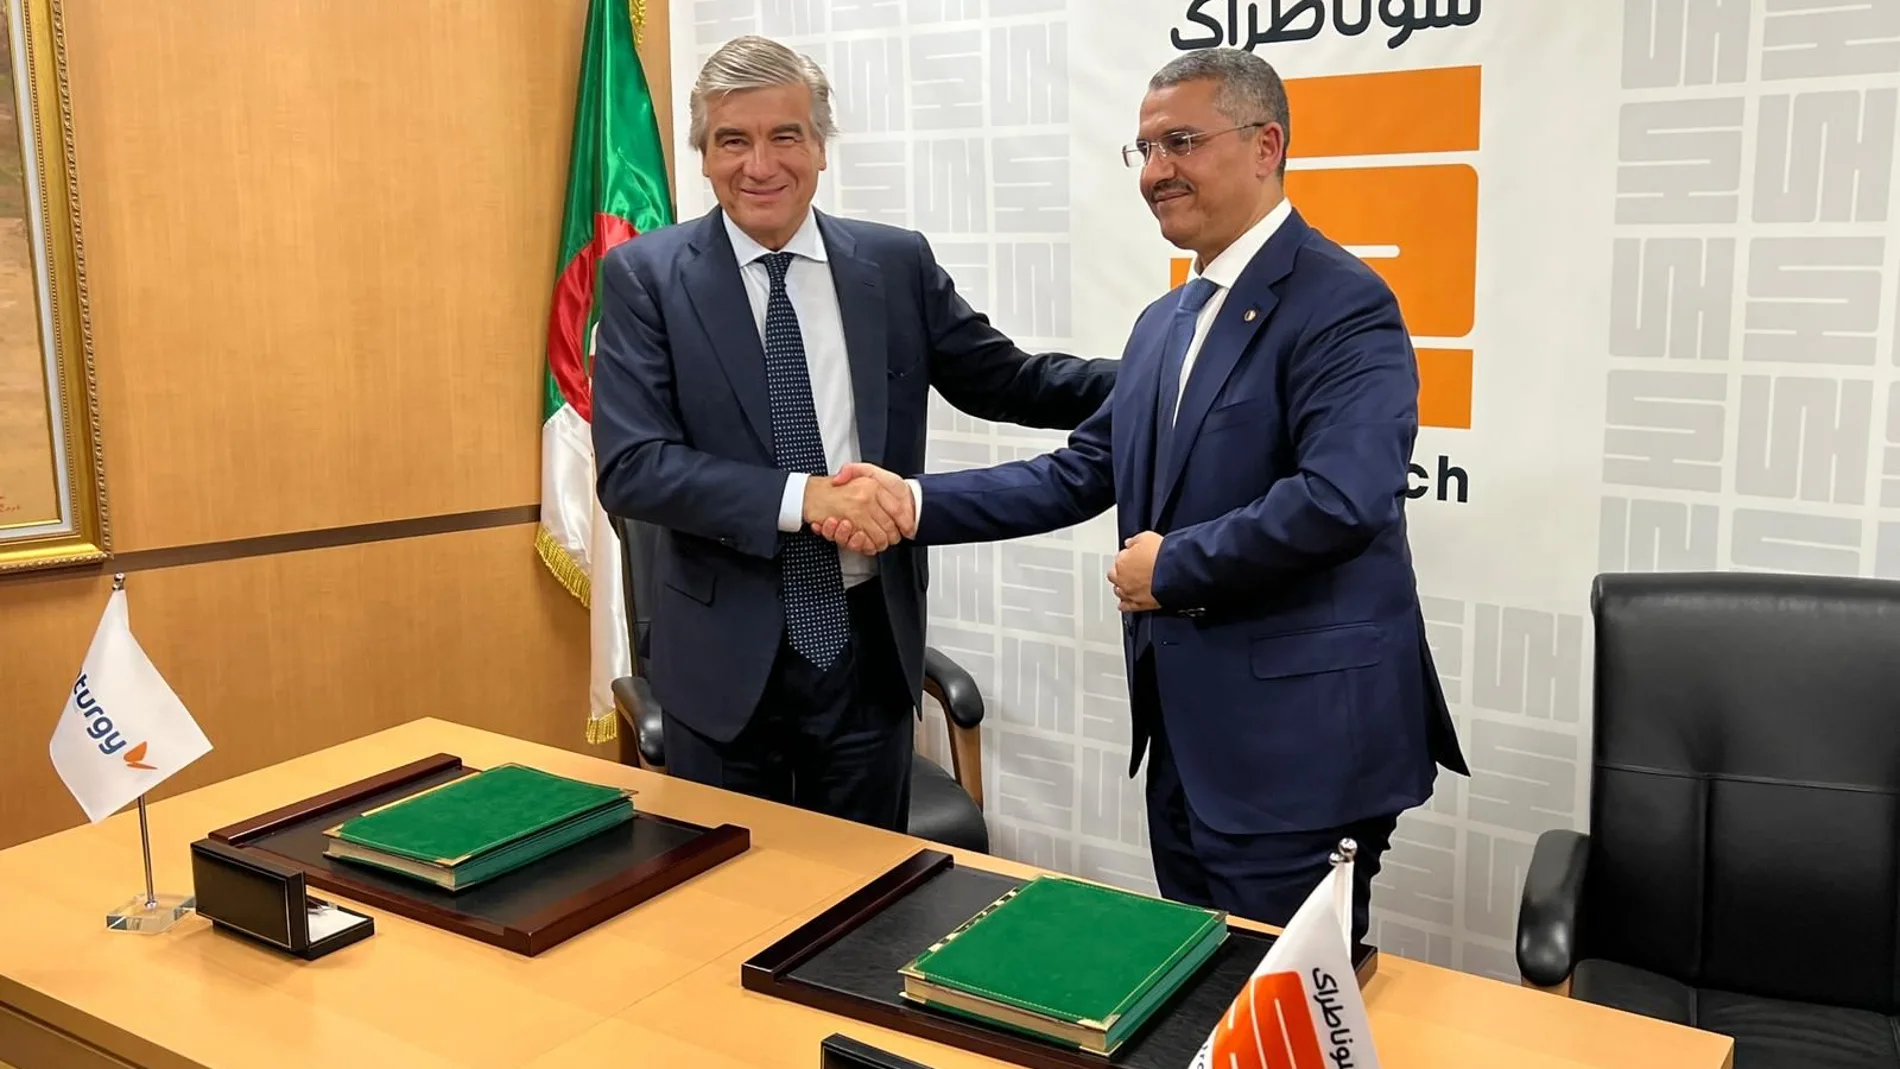 El presidente de Naturgy, Francisco Reynés, con el director ejecutivo de la argelina Sonatrach, Toufik Hakkar, tras la firma del acuerdo de ajuste de precios en Argel